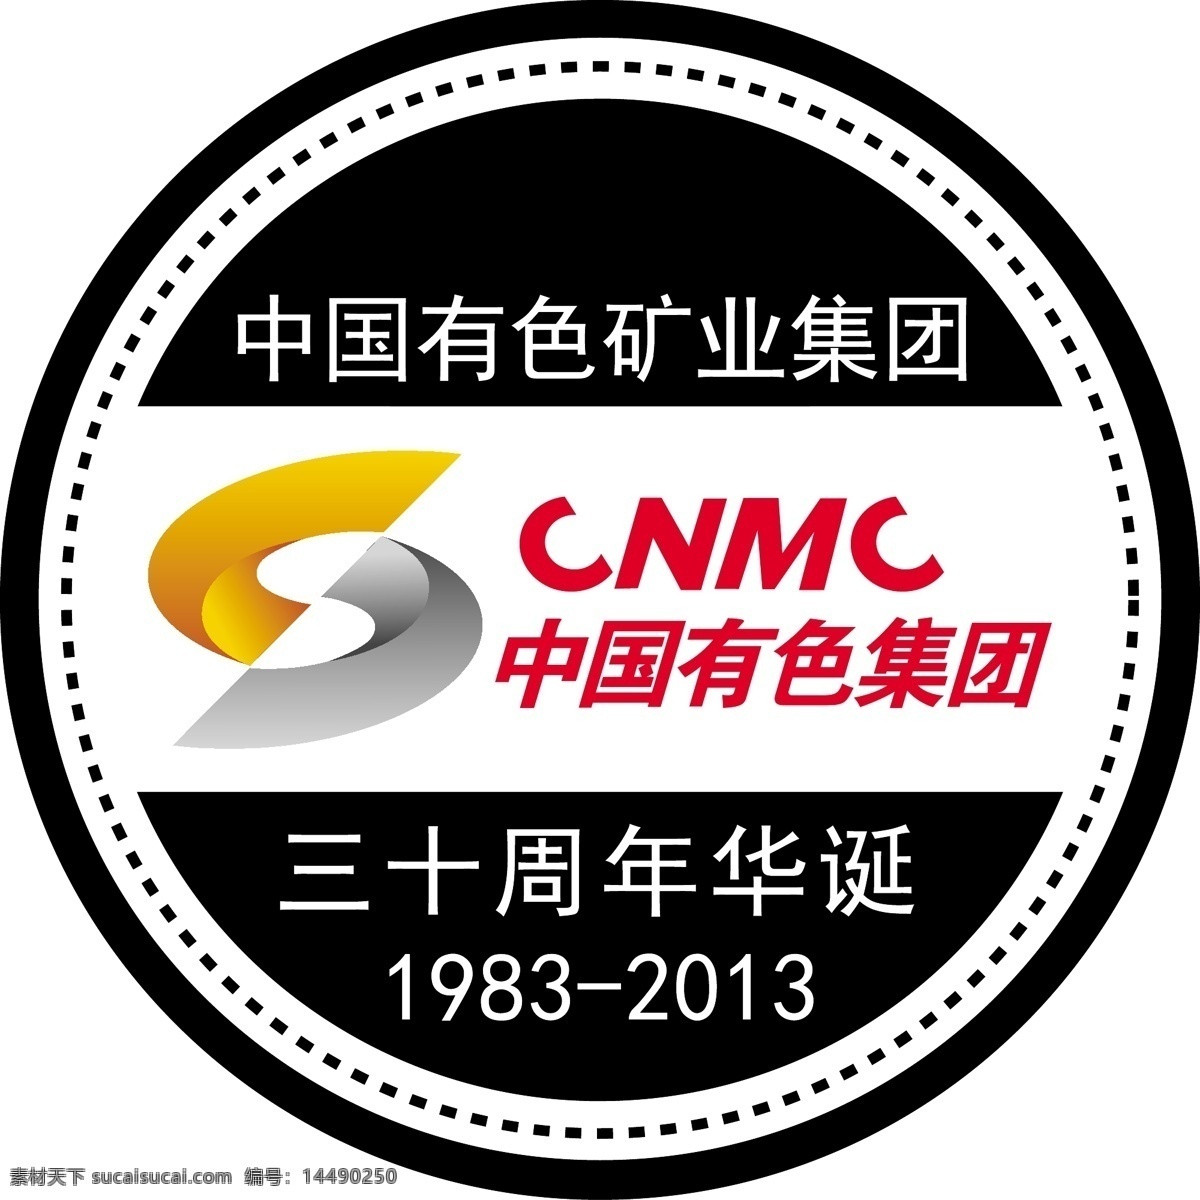 中国 有色 矿业 集团 中国有色集团 标志 logo 企业标志 矢量标志 标志素材 标识标志 企业 标识标志图标 矢量